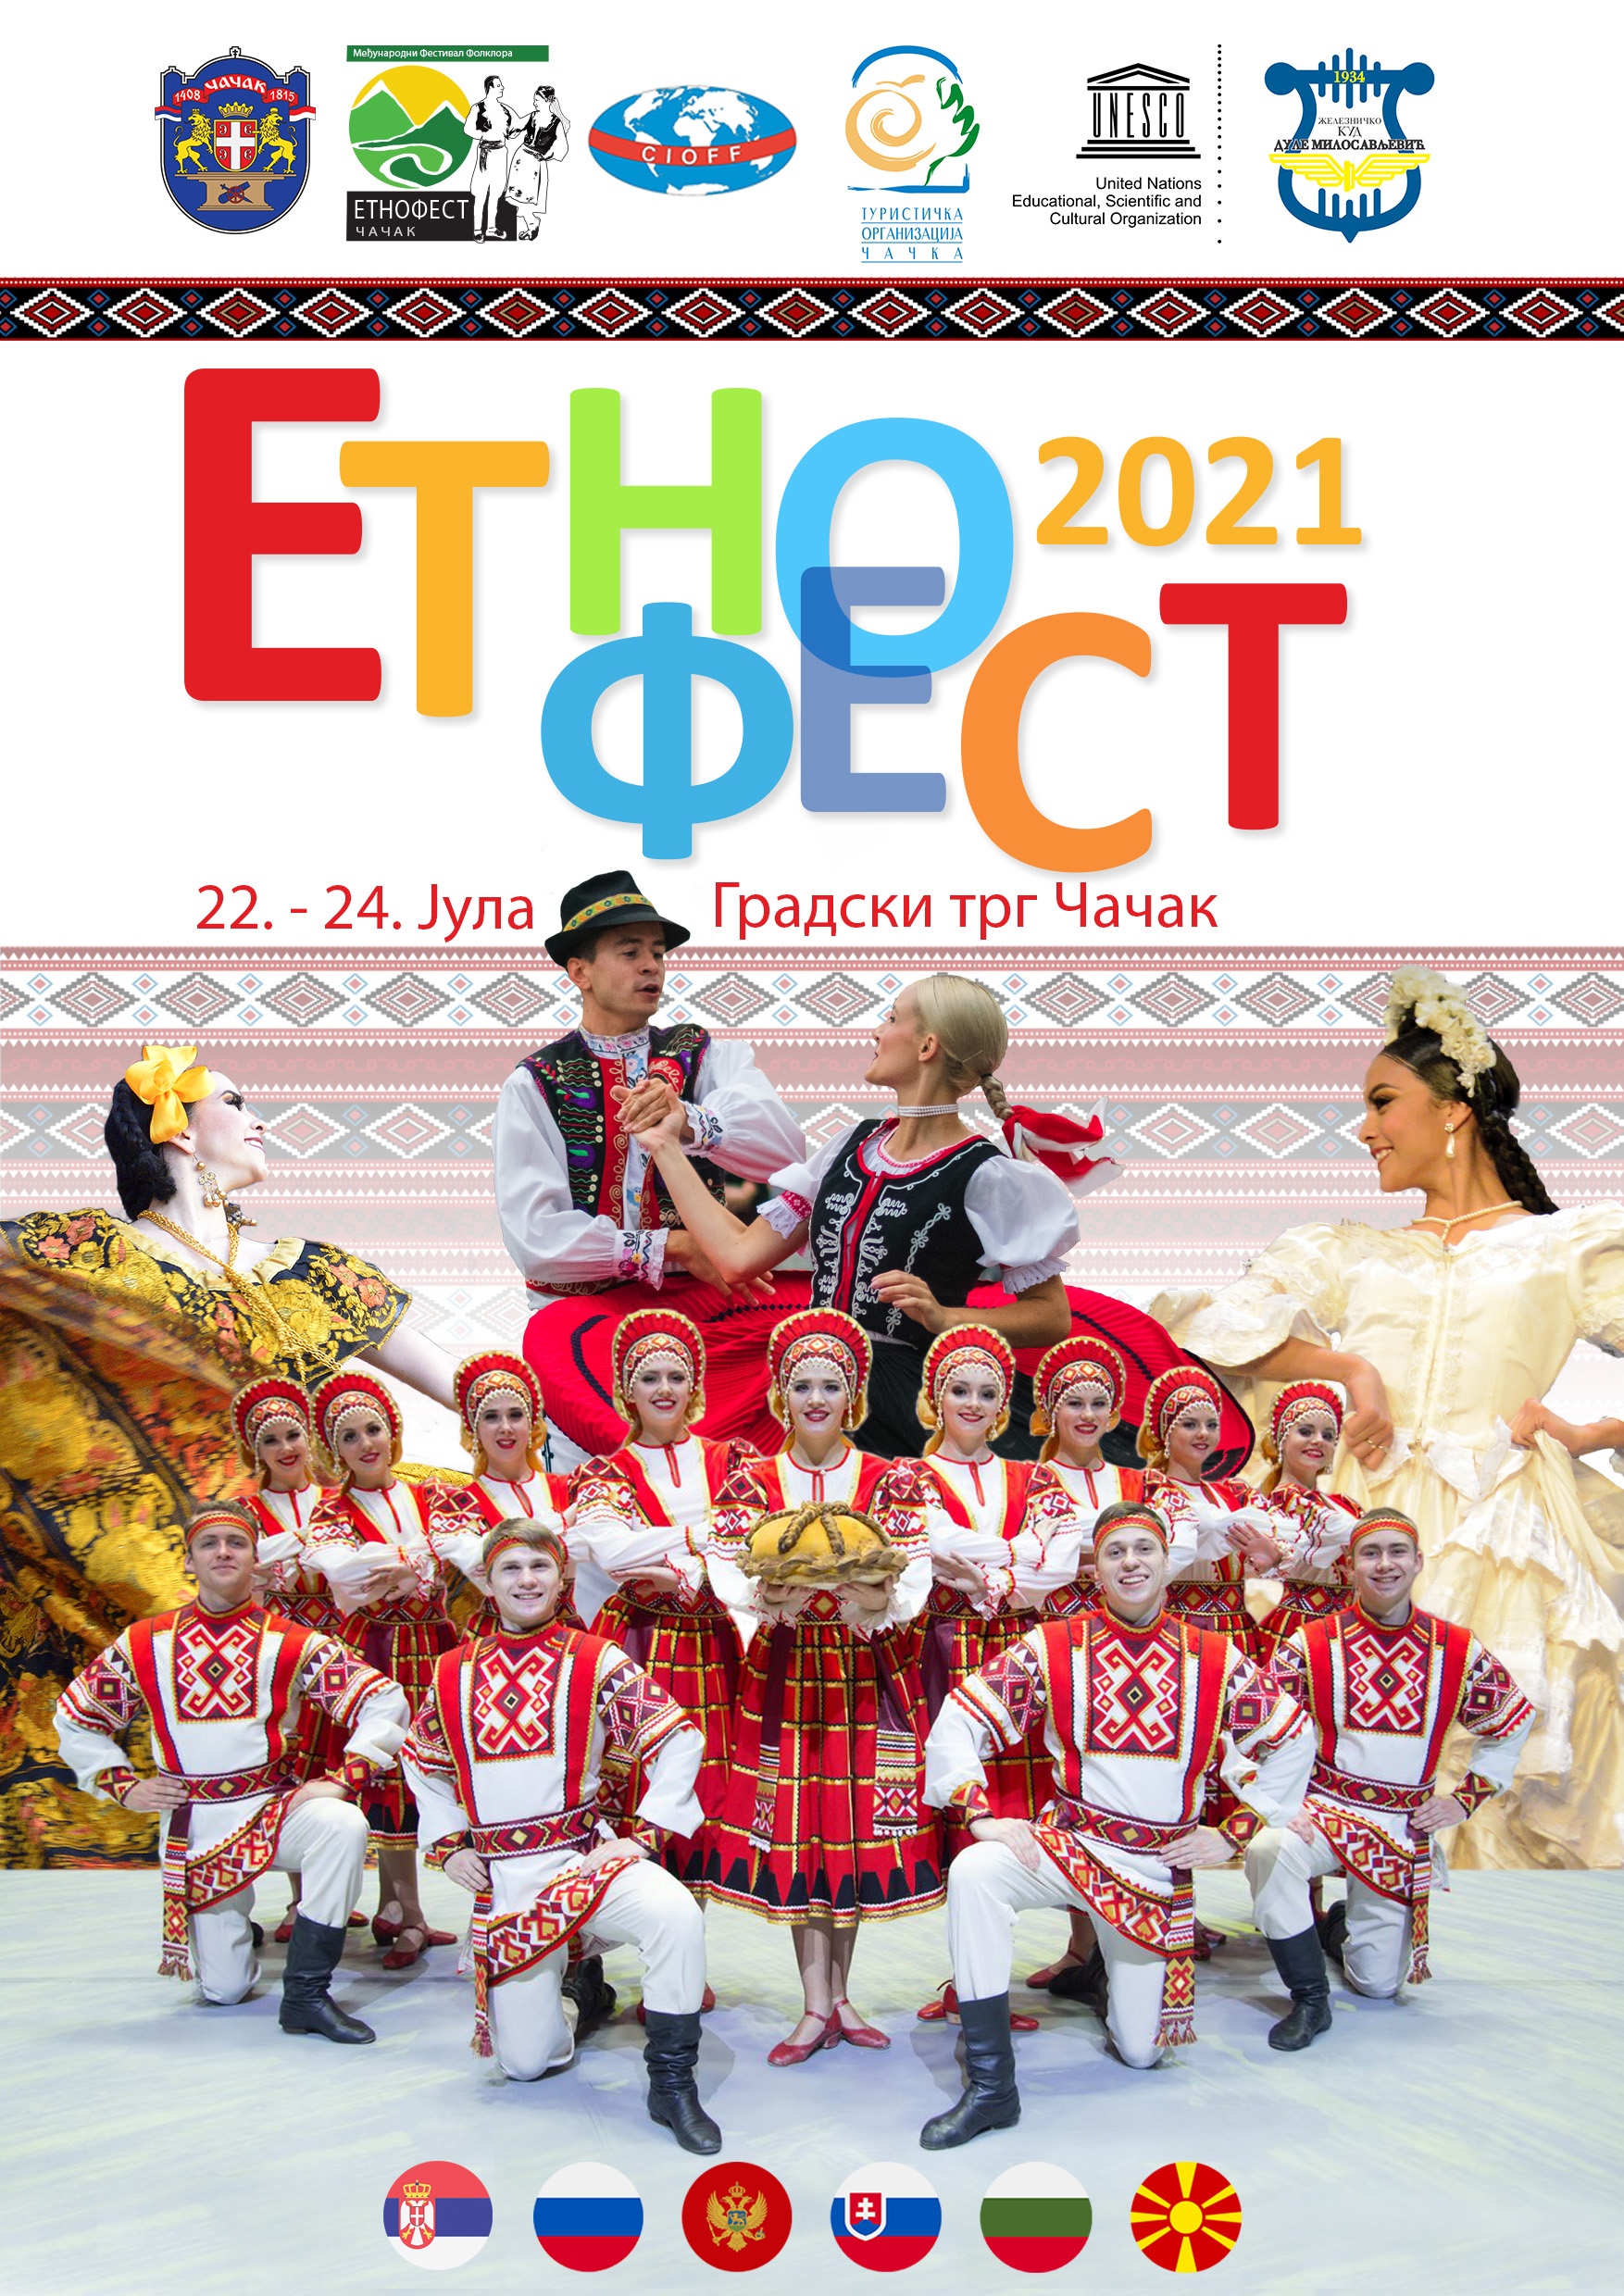 Најава међународног фестивала фолклора ЕТНОФЕСТ 2021